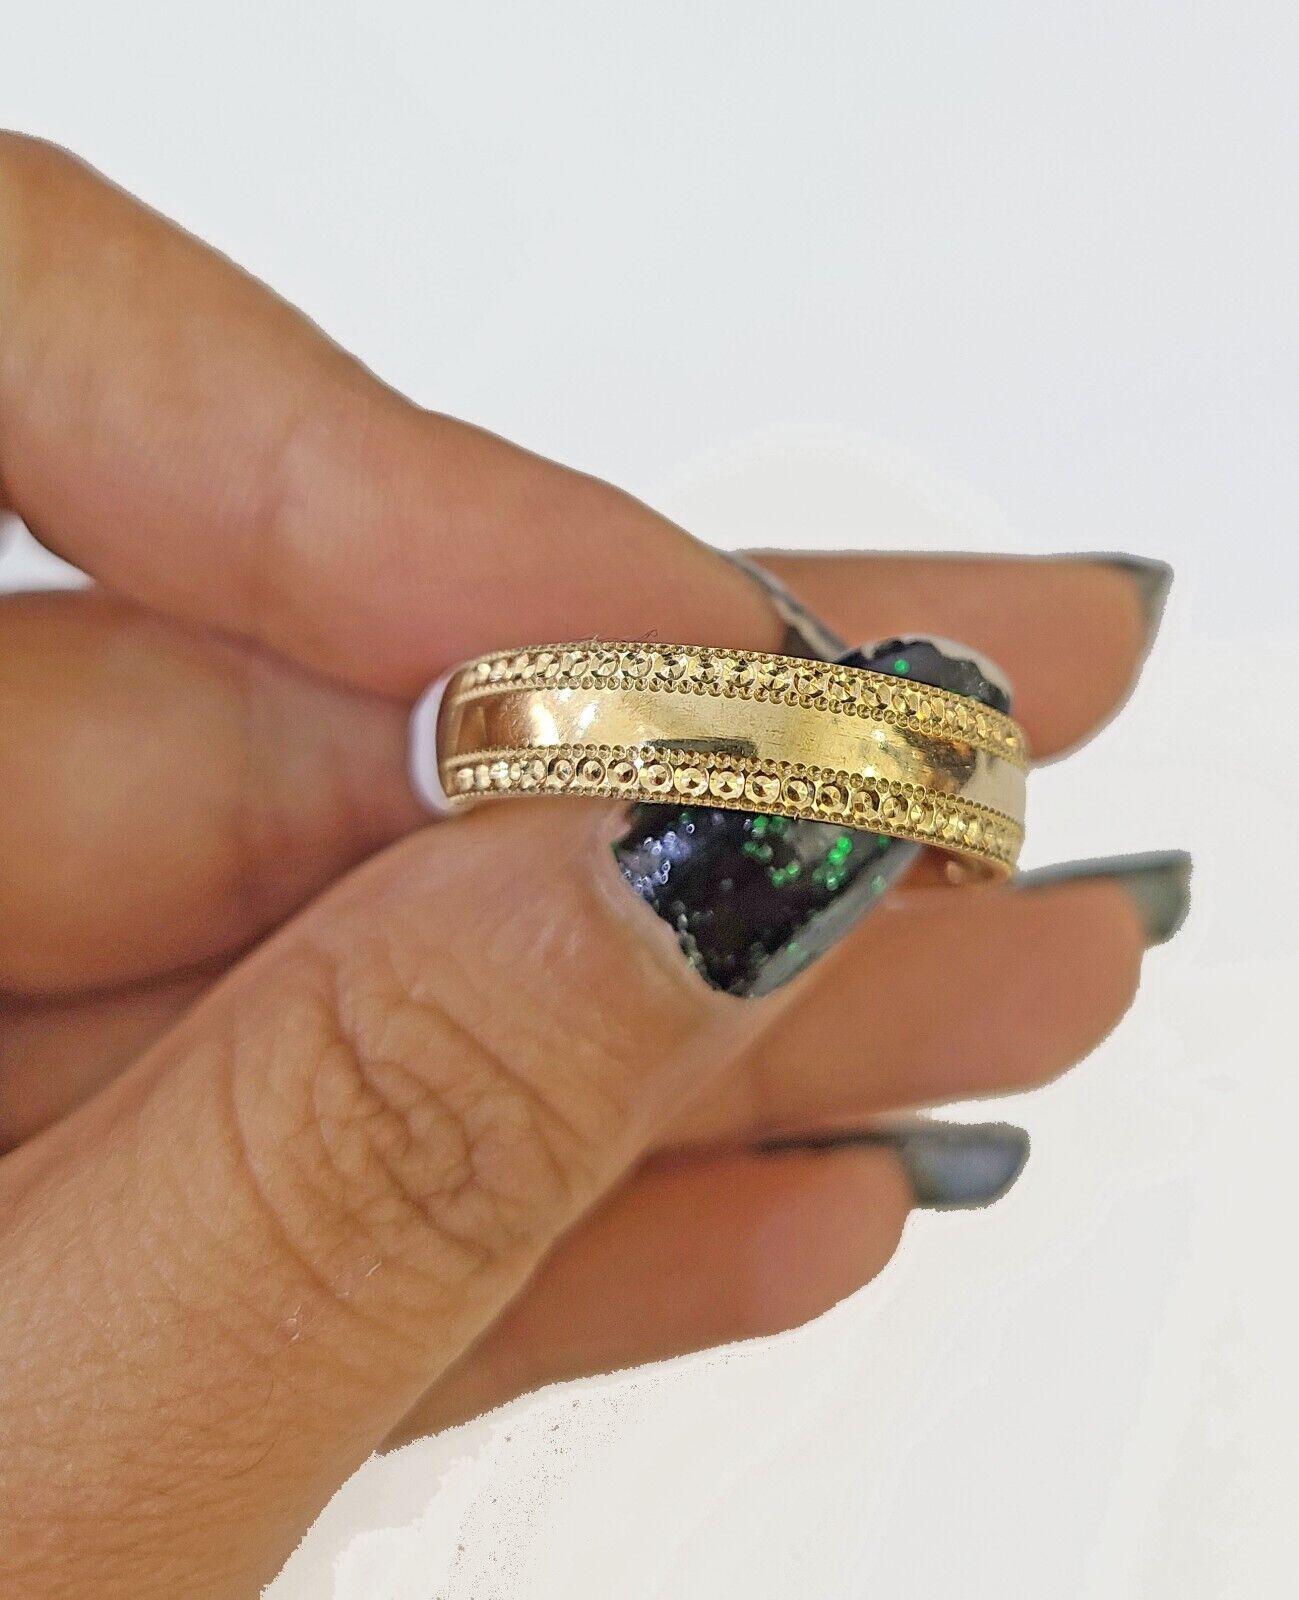 Real 10k gold circular sizable ring ,10kt yellow size 13 Casual Circle Band Men